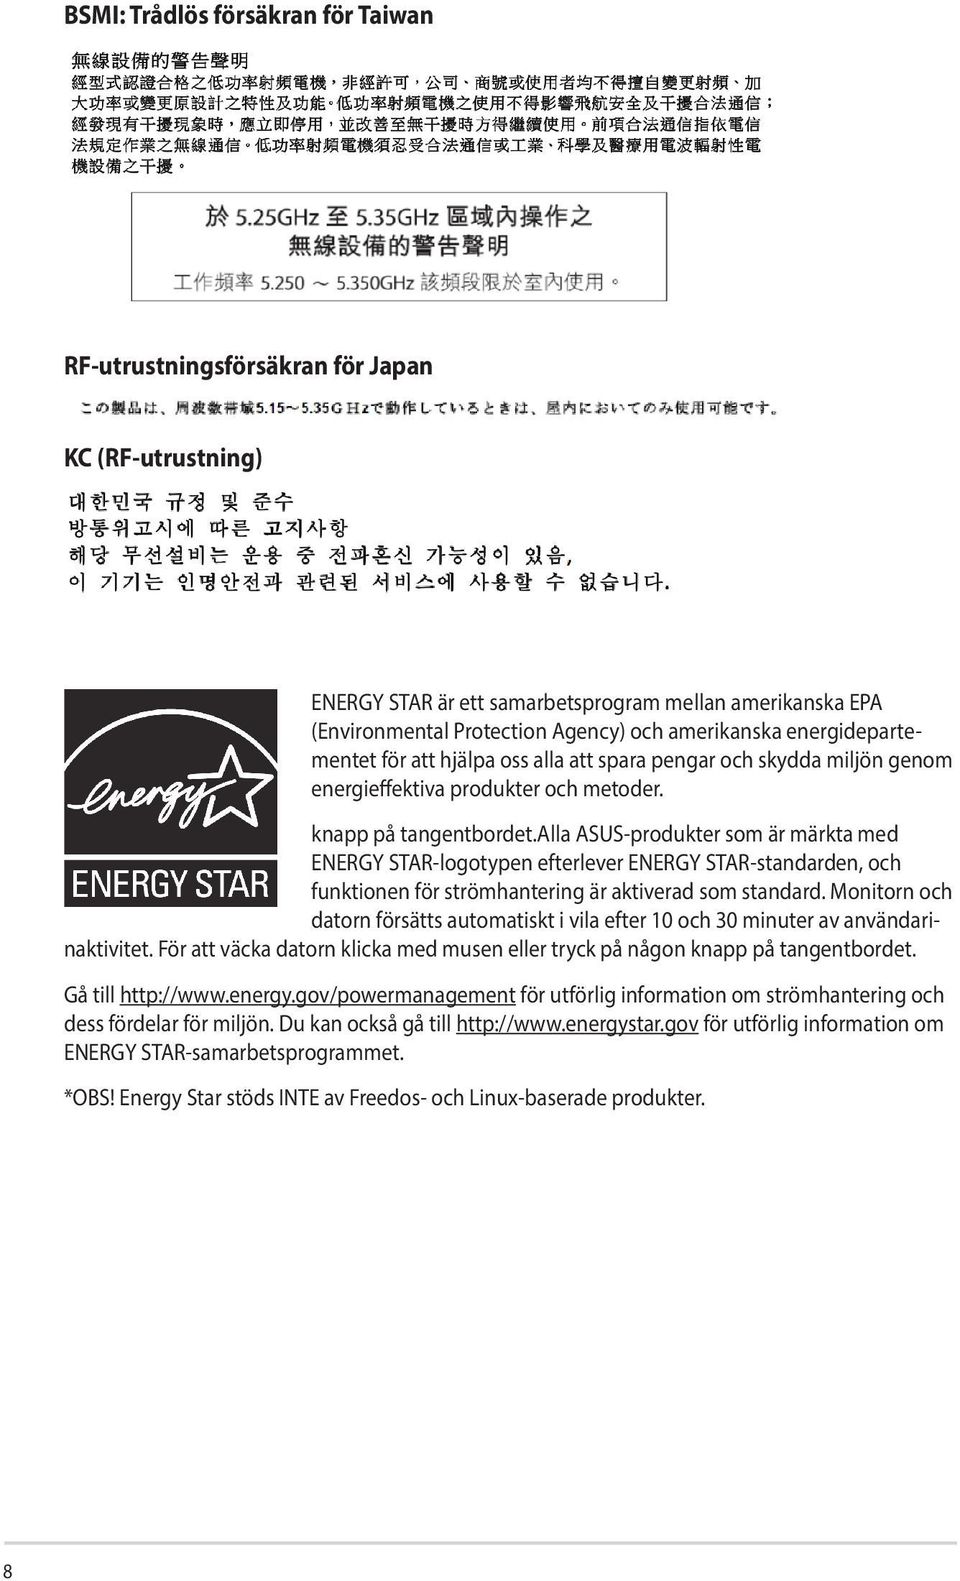 alla ASUS-produkter som är märkta med ENERGY STAR-logotypen efterlever ENERGY STAR-standarden, och funktionen för strömhantering är aktiverad som standard.